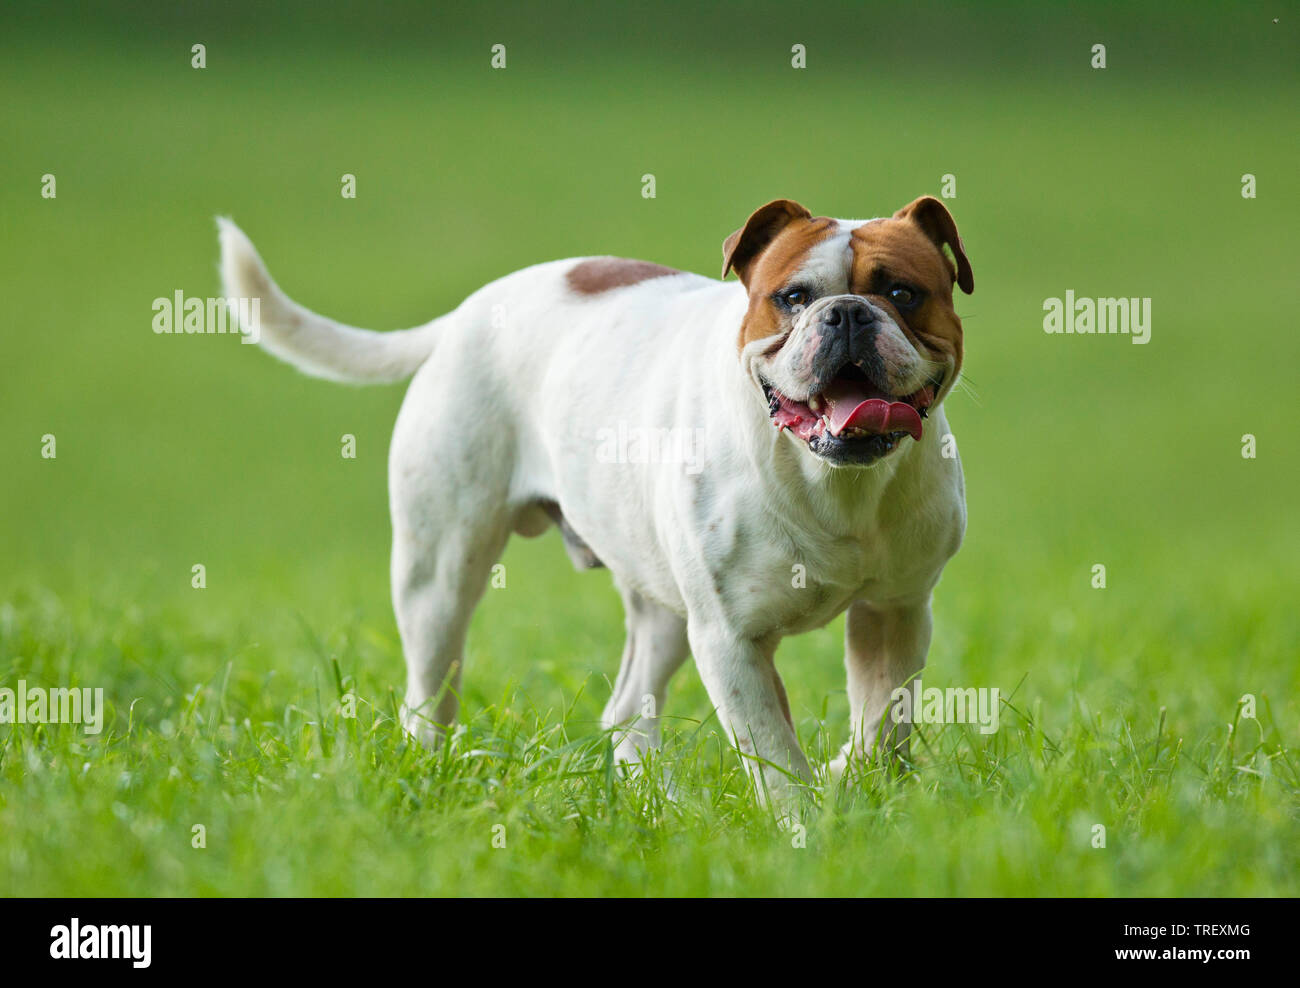 Olde English Bulldogge, Leavitt Bulldog. Promenade de chiens adultes sur un pré. Allemagne Banque D'Images